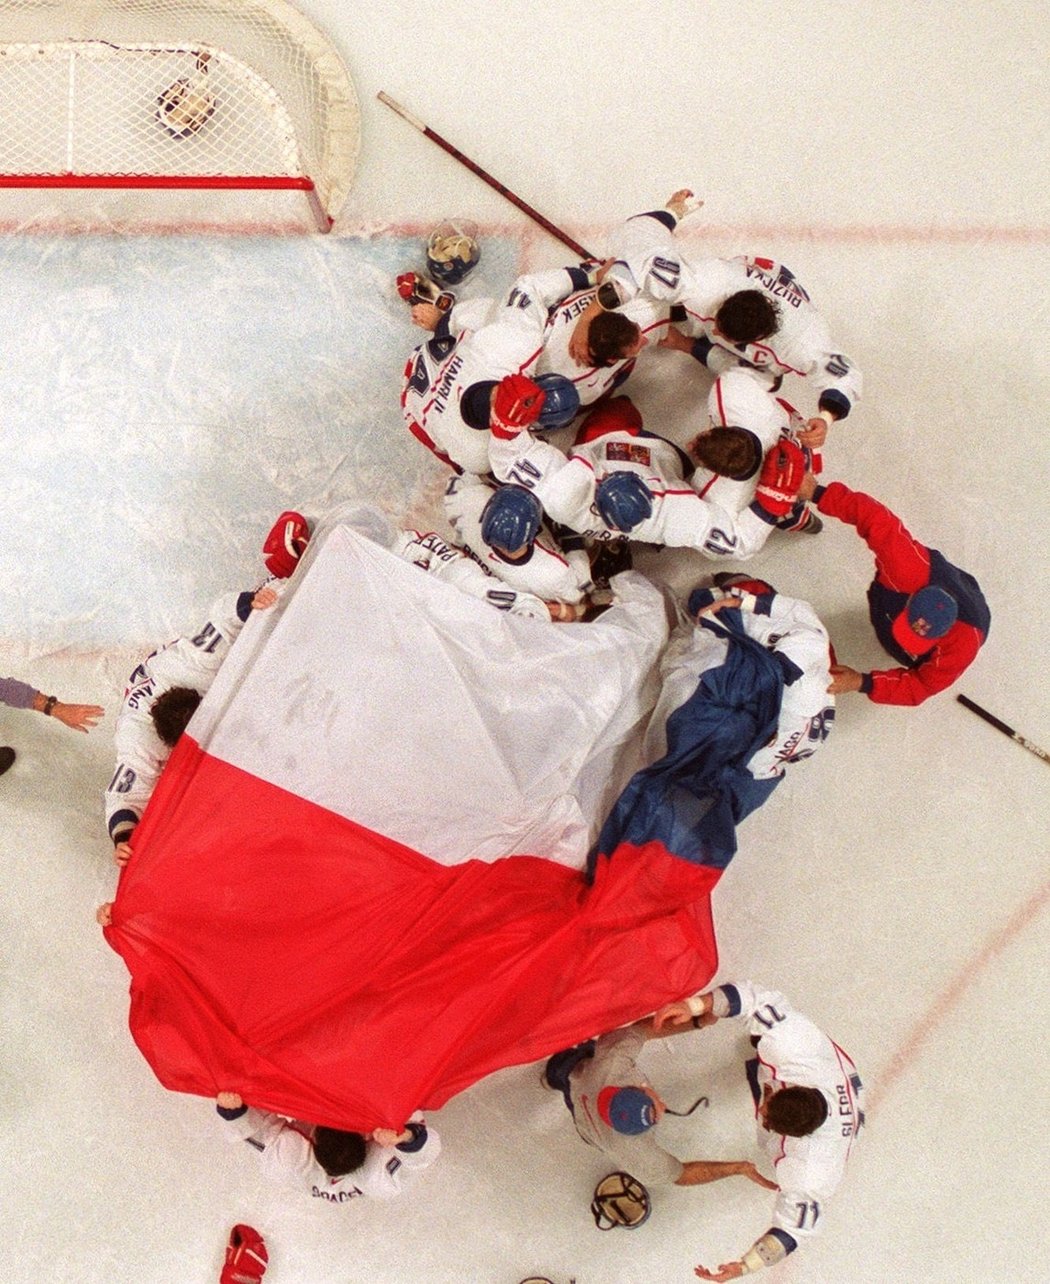 I po 15 letech zůstává olympijský triumf z Nagana nepřekonaným úspěchem českého hokeje.